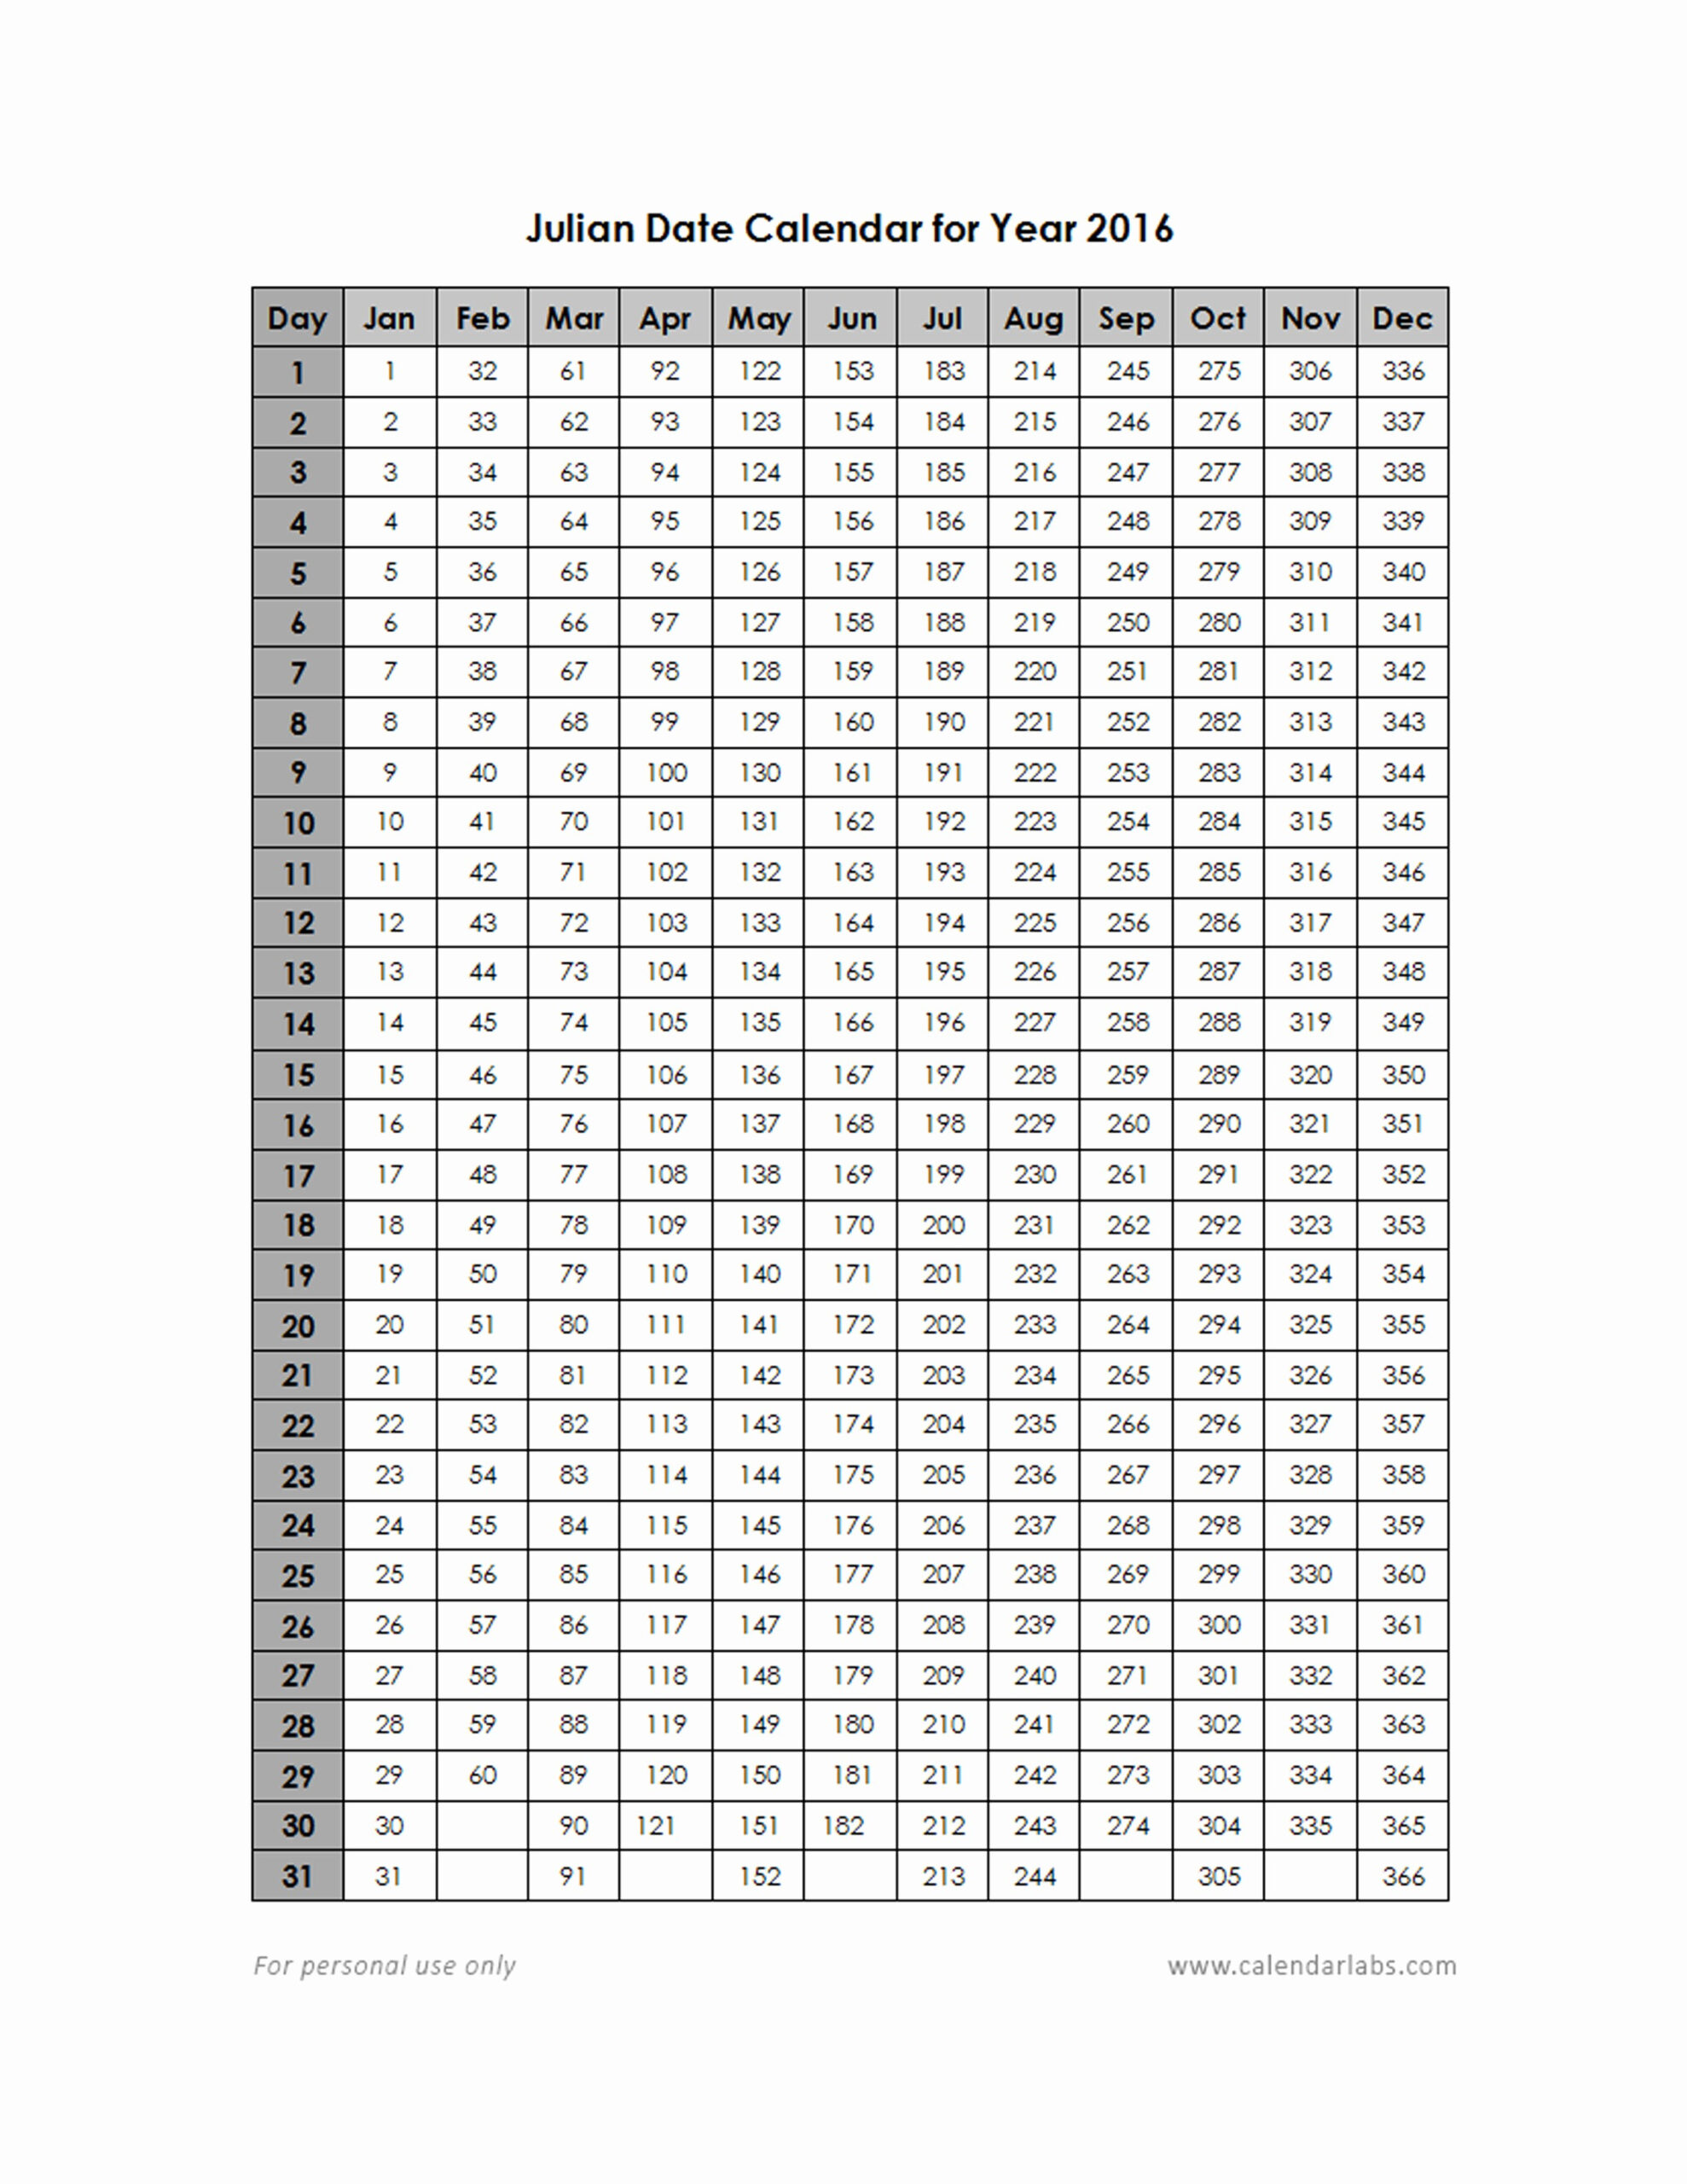 Julian Date Calendar 2020 | Calendar For Planning intended for Julian Calendar Perpetual 2021